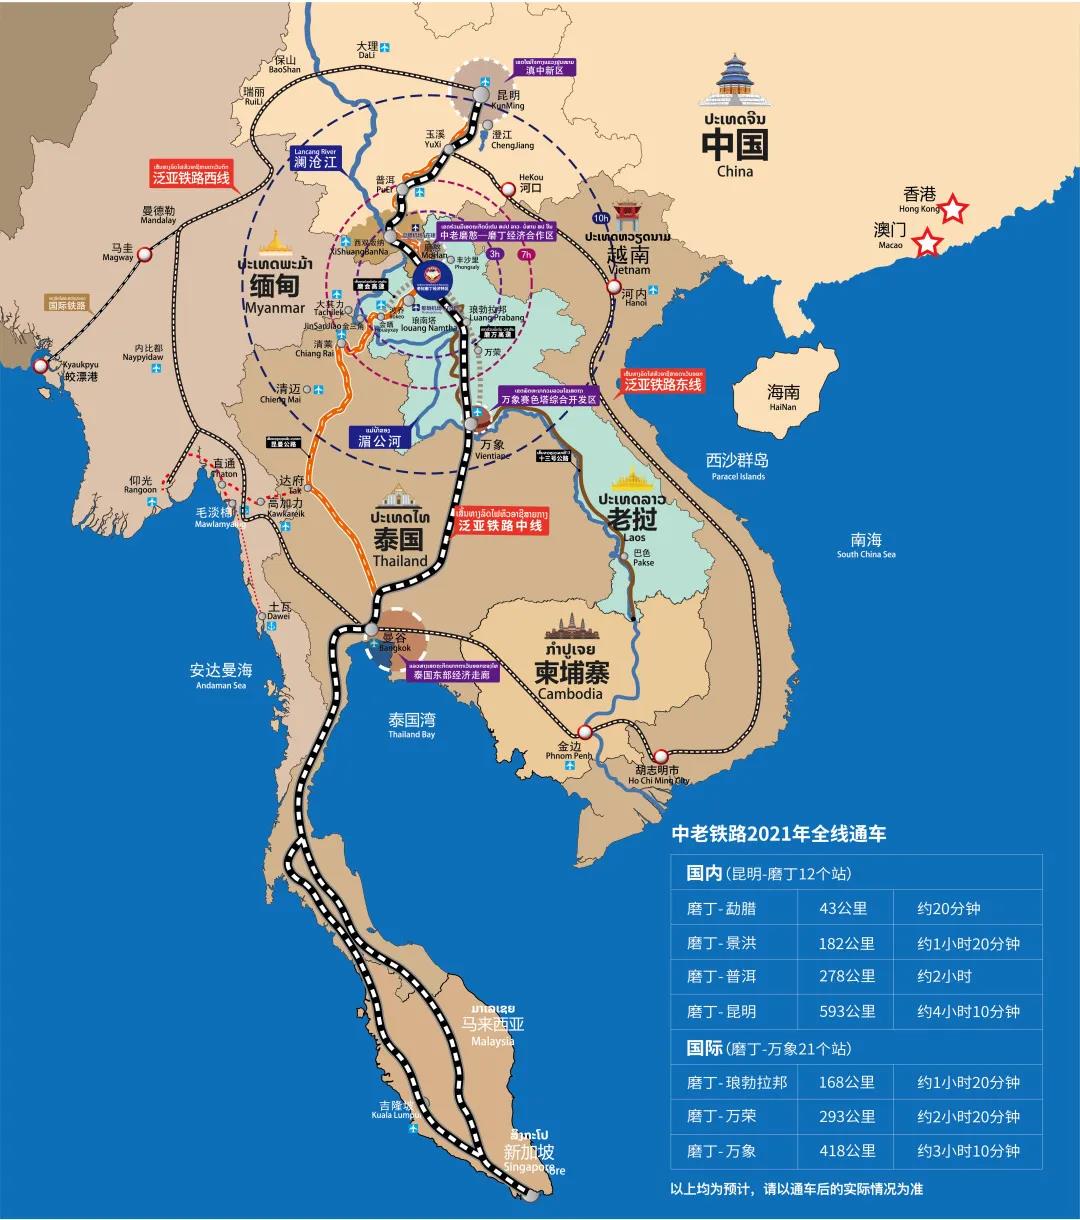 老挝磨丁经济特区位置图片